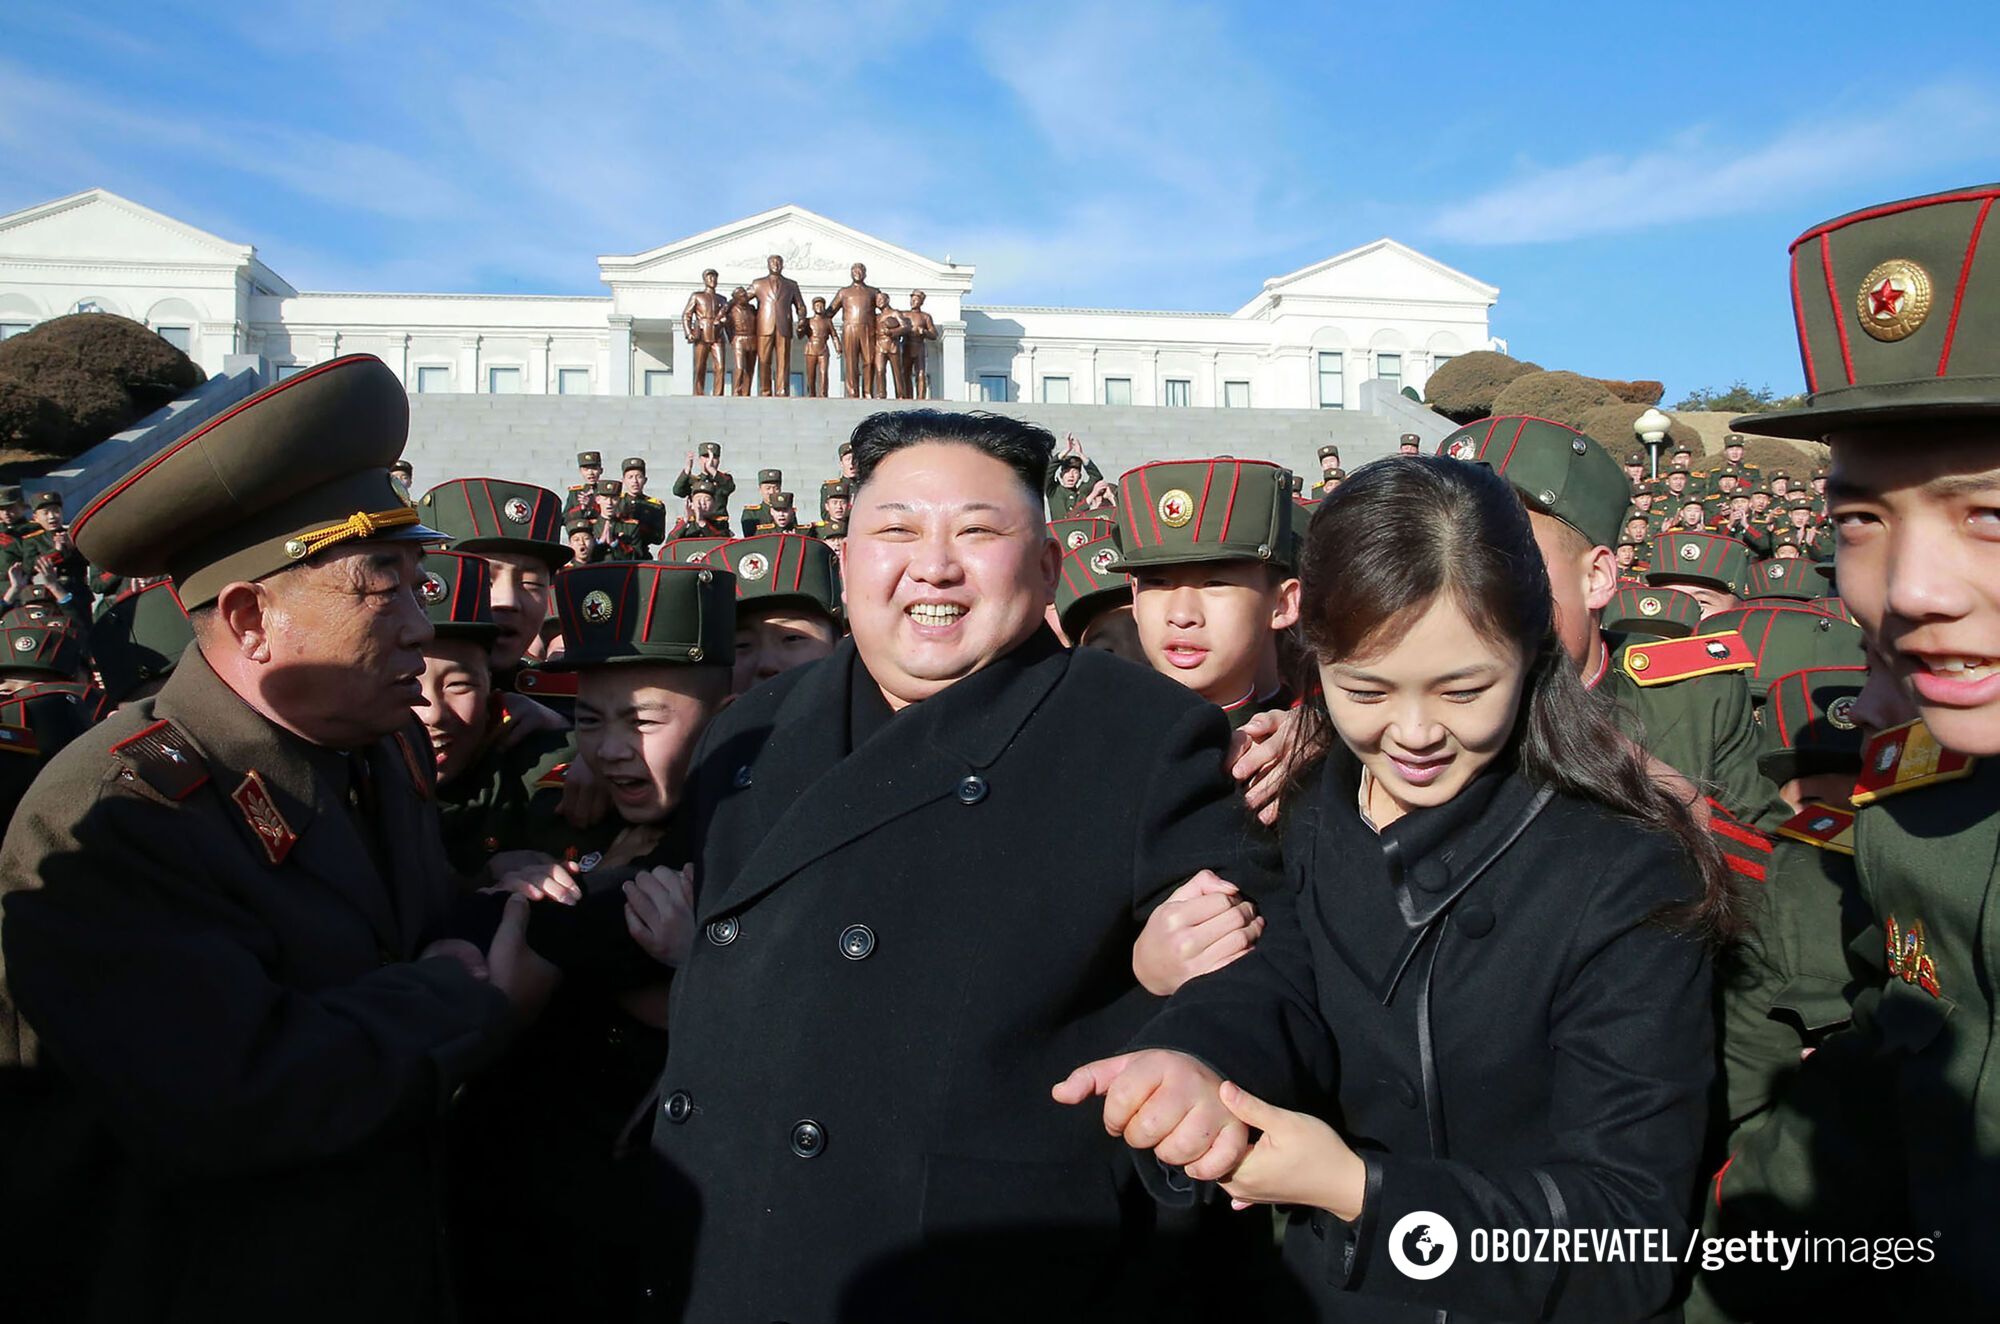 Жена носит Dior и Chanel, а дочь готовят в лидеры КНДР: что скрывает "сумасшедший диктатор" Ким Чен Ын